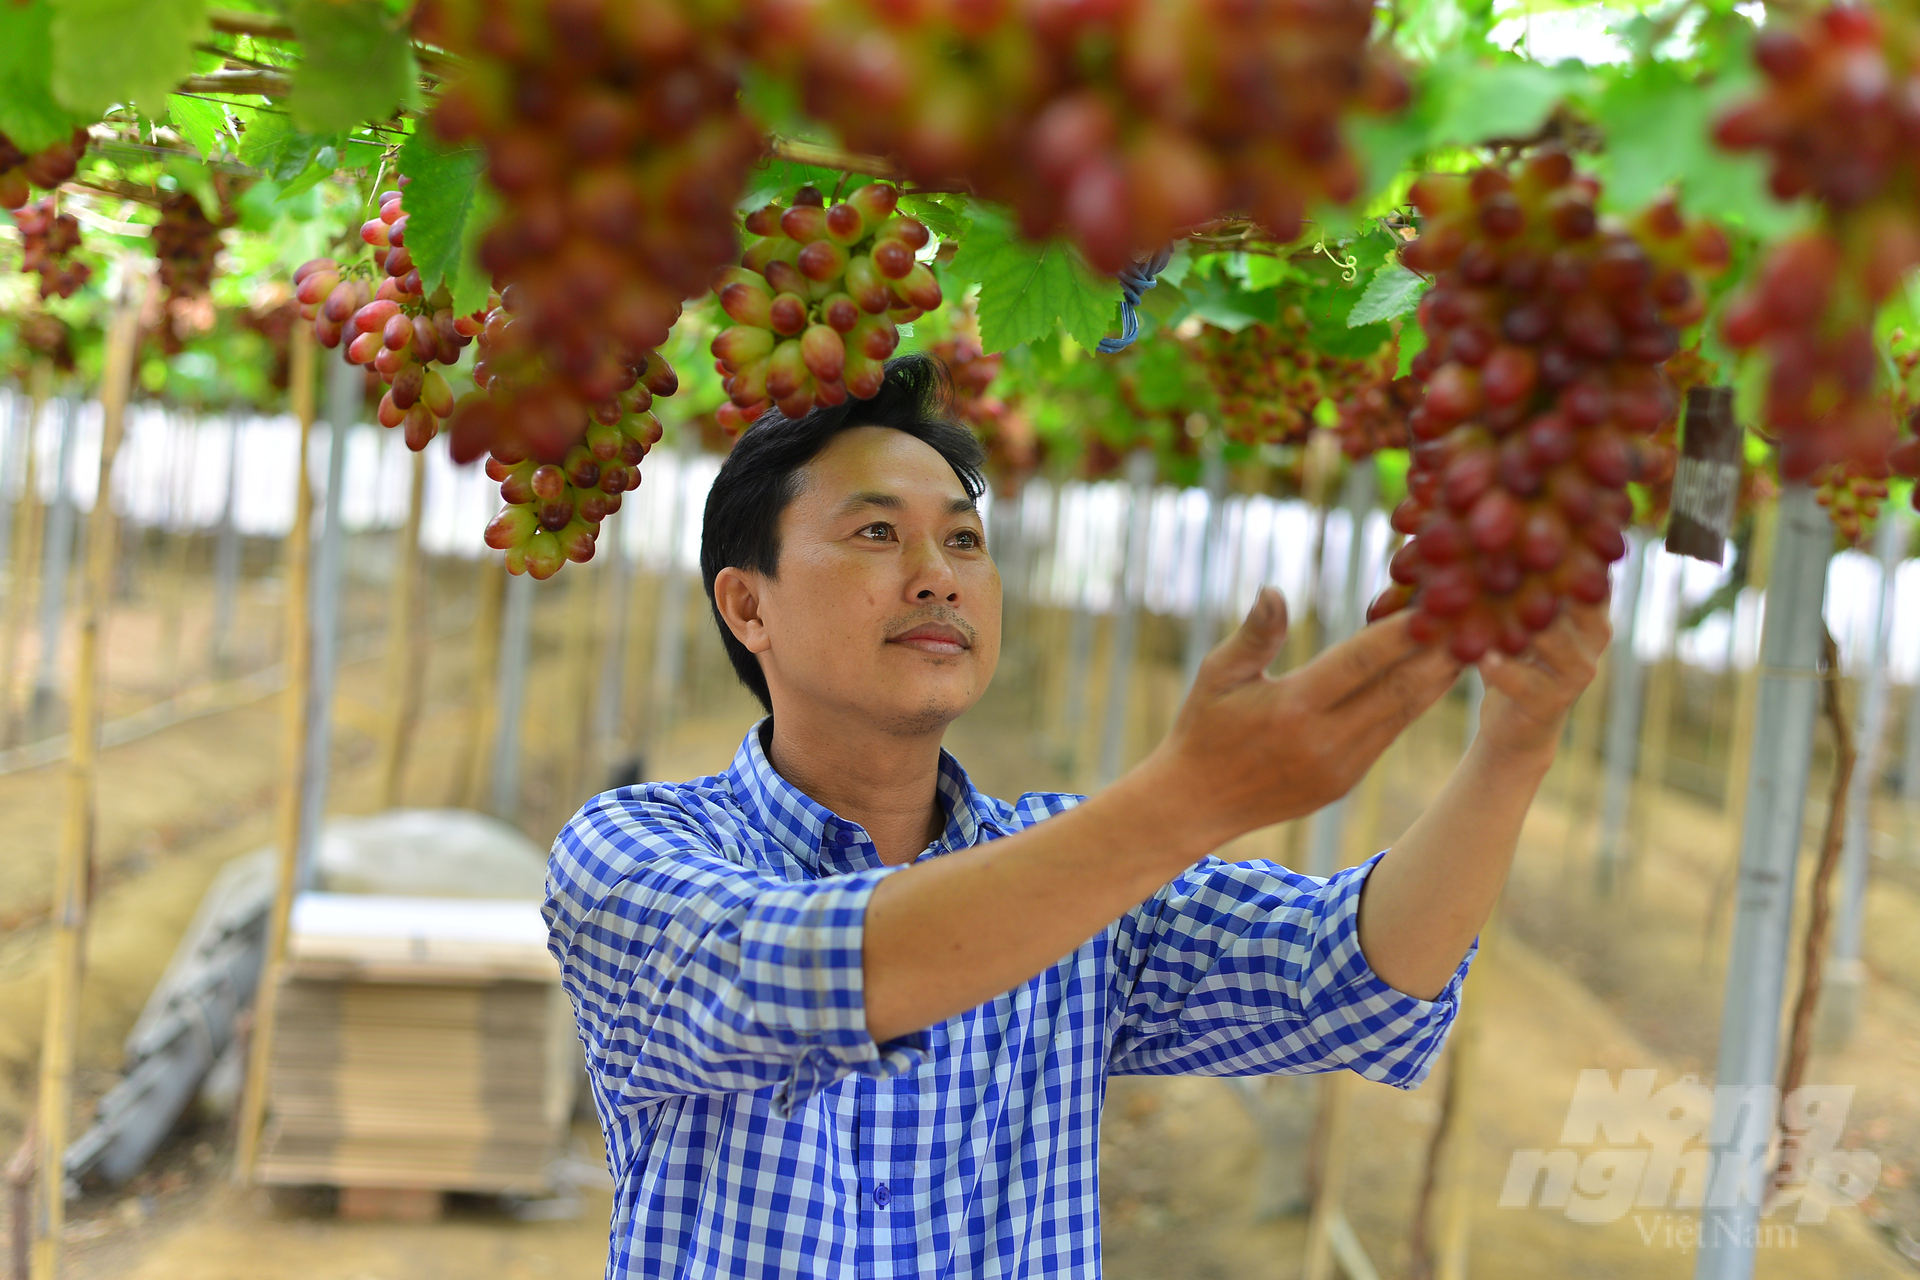 Các mô hình nho giống mới, áp dụng công nghệ cao tại Ninh Thuận có thể đạt 1,2 - 2,1 tỷ đồng/vụ, tương đương 2,6 - 4,4 tỷ đồng/ha/năm. Ảnh: Minh Hậu.